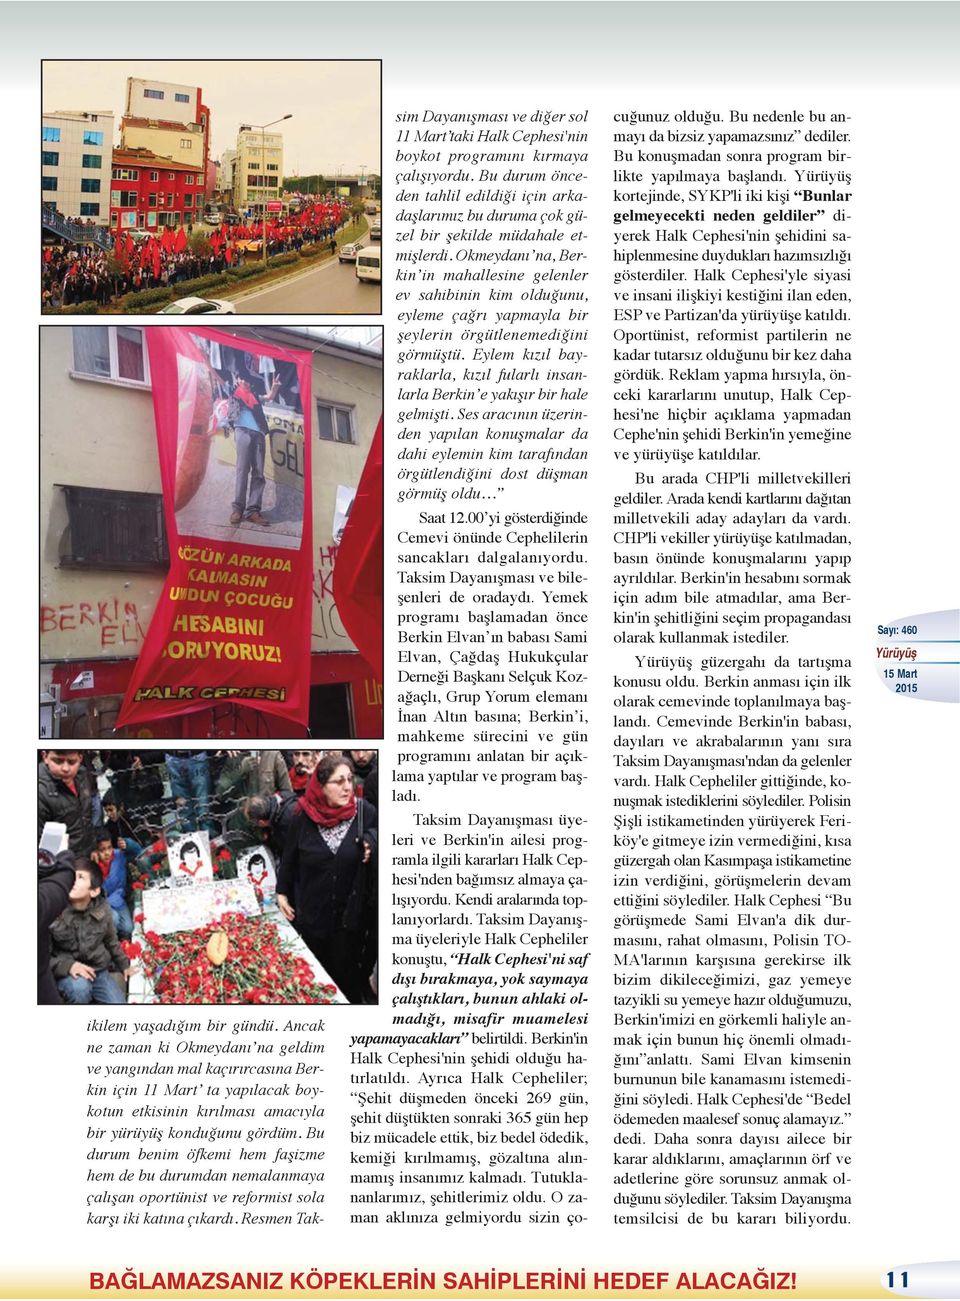 Resmen Taksim Dayanışması ve diğer sol 11 Mart taki Halk Cephesi'nin boykot programını kırmaya çalışıyordu.